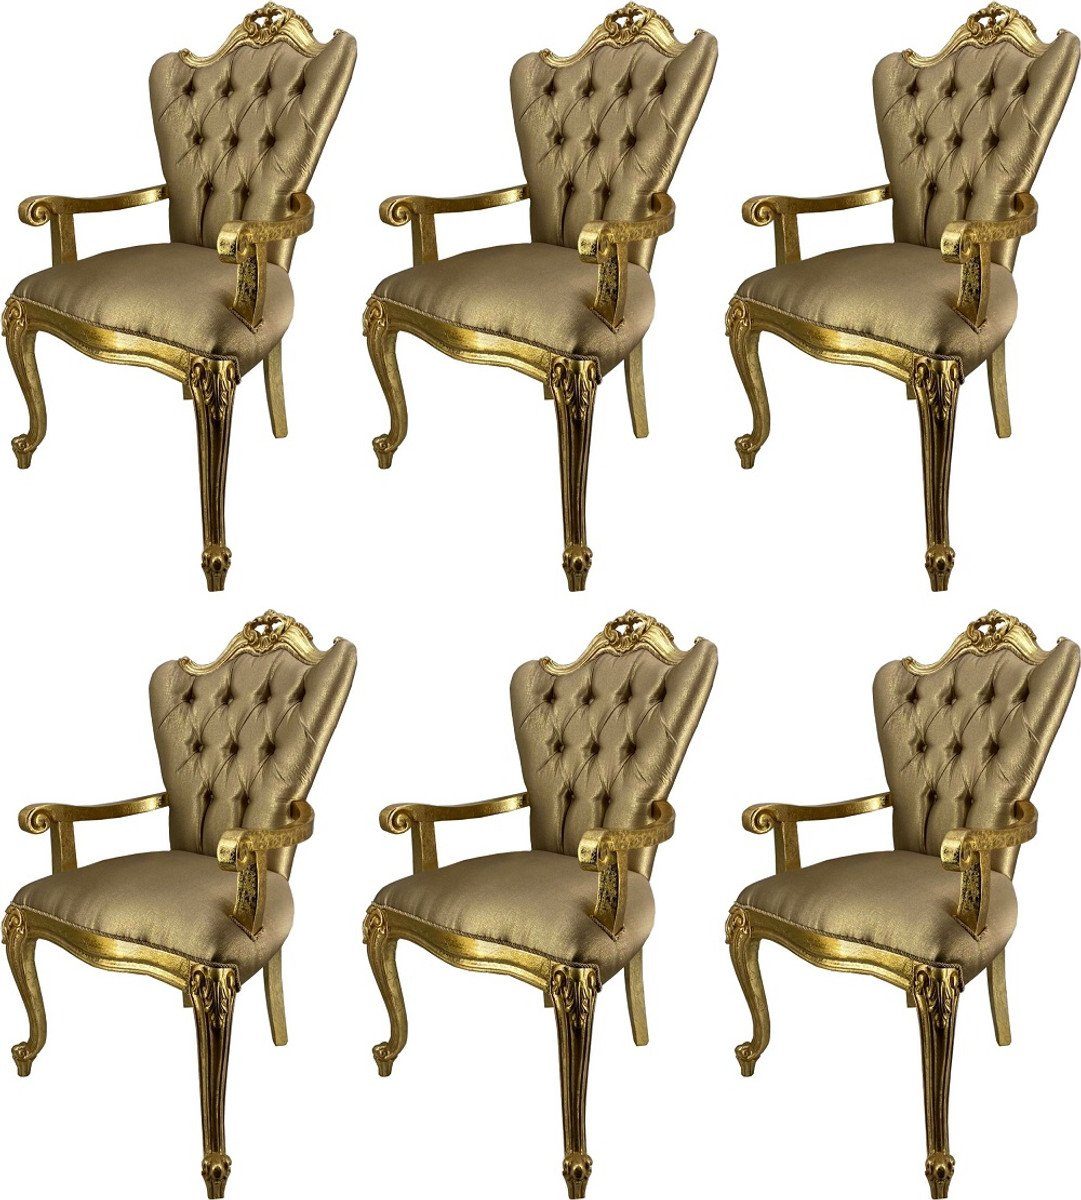 Casa Padrino Esszimmerstuhl Luxus Barock Esszimmerstuhl Set Gold / Gold - 6 Küchen Stühle mit Armlehnen - Barock Esszimmer Möbel - Edel & Prunkvoll